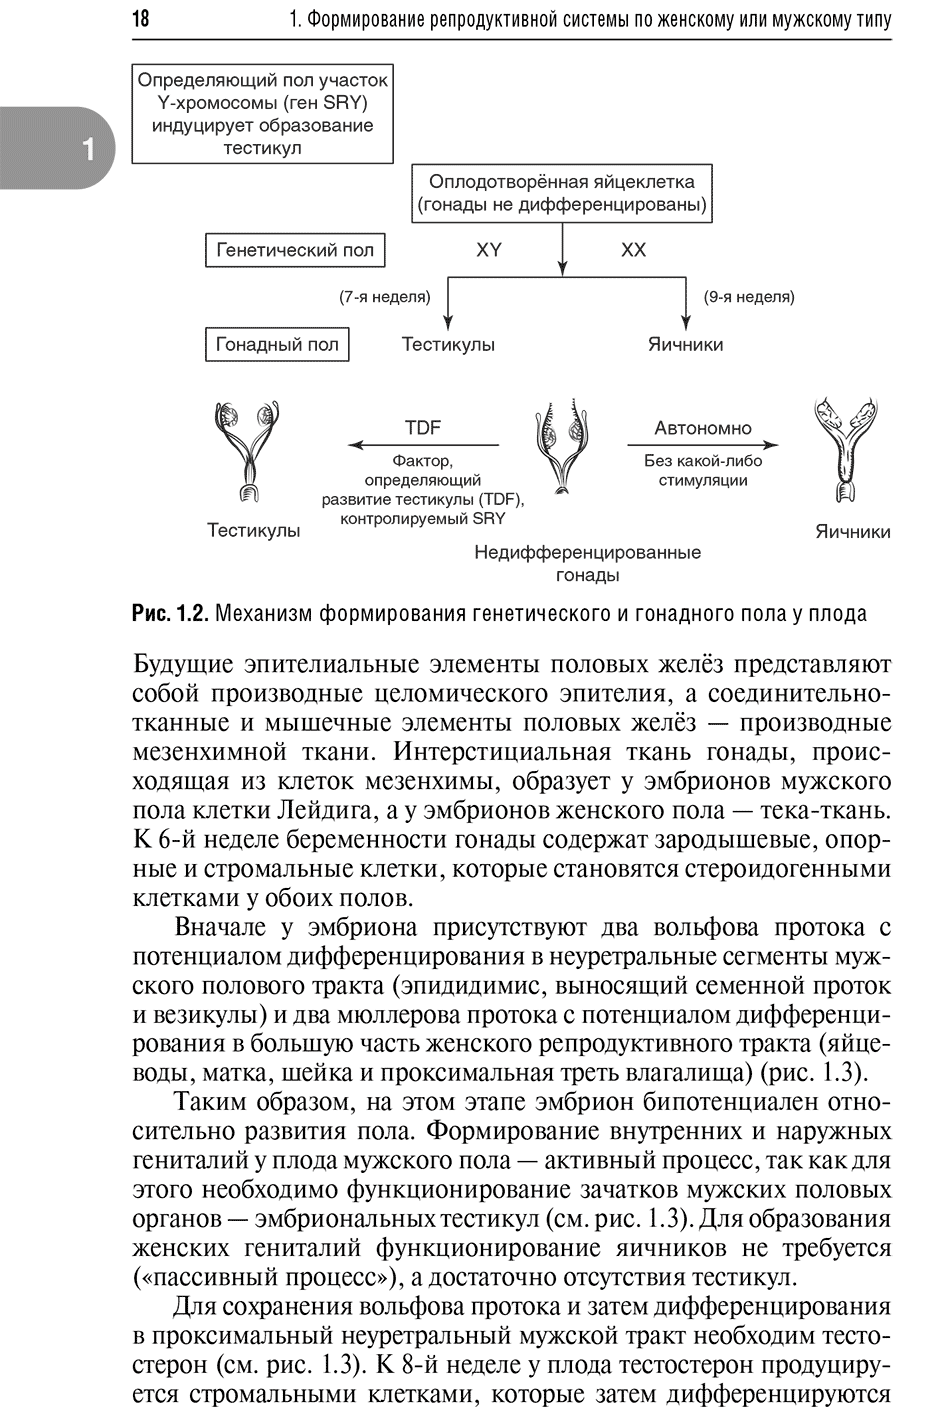 Рис. 1.2. Механизм формирования генетического и гонадного пола у плода